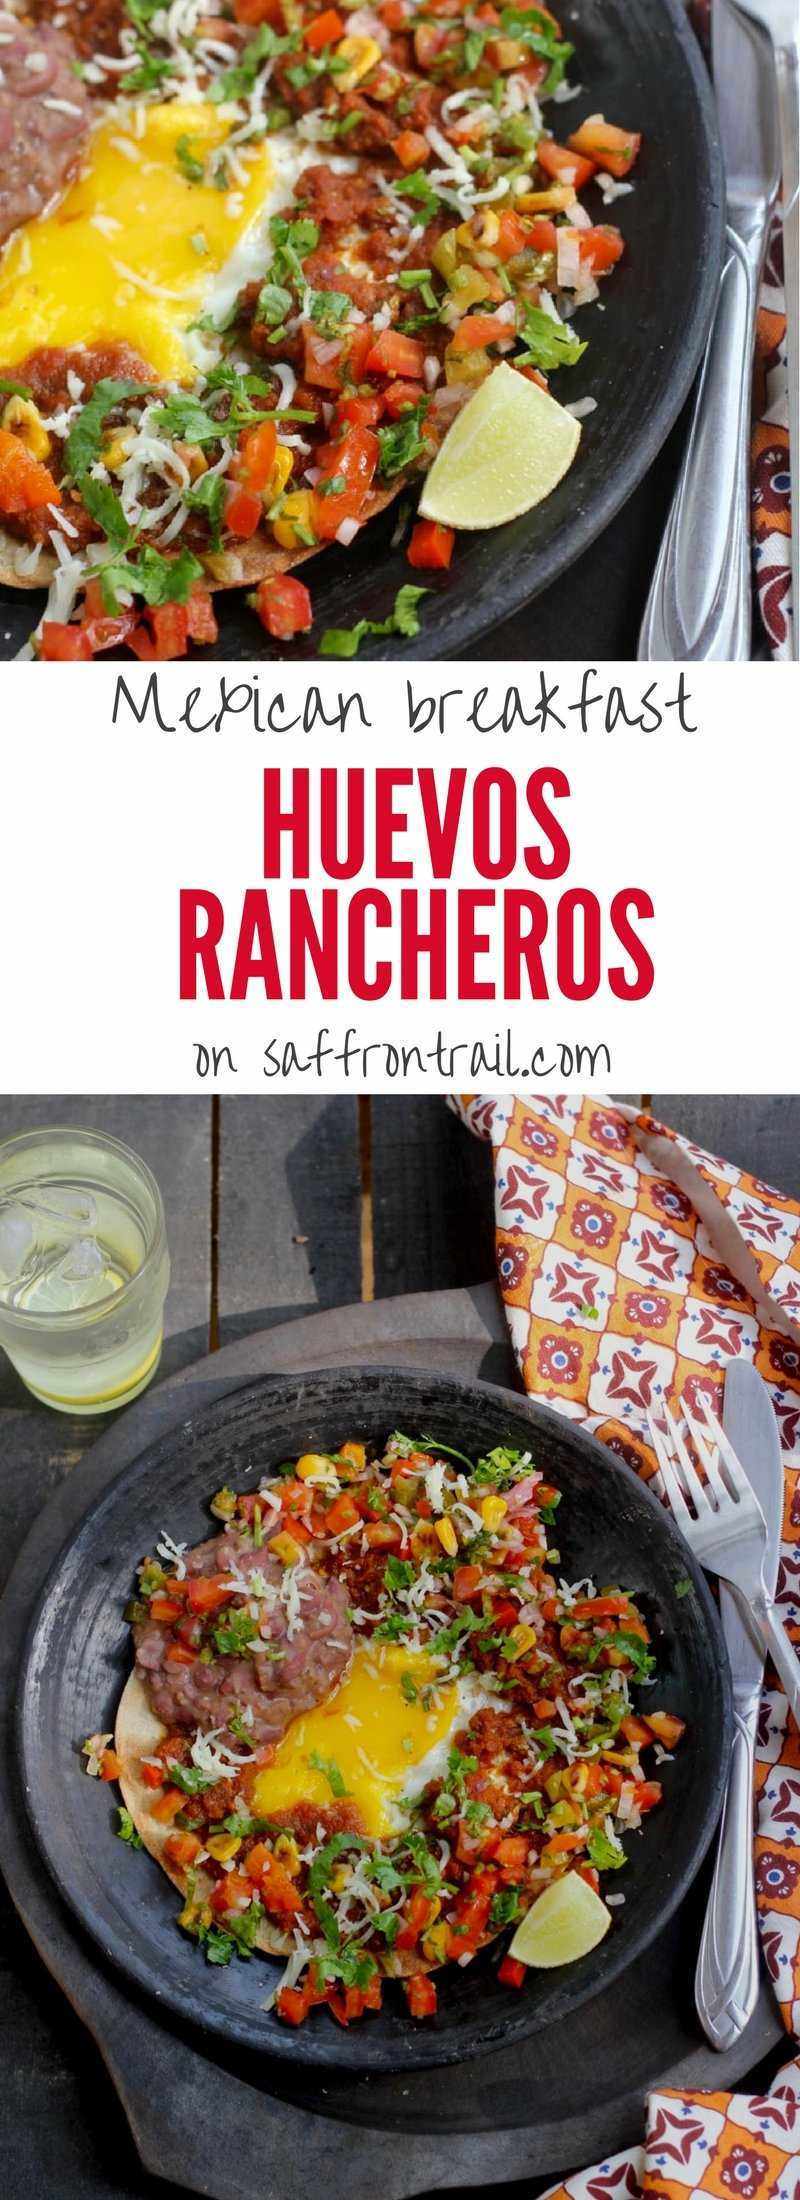 Huevos Rancheros - Vegetarian Mexican Recipes | Saffron Trail